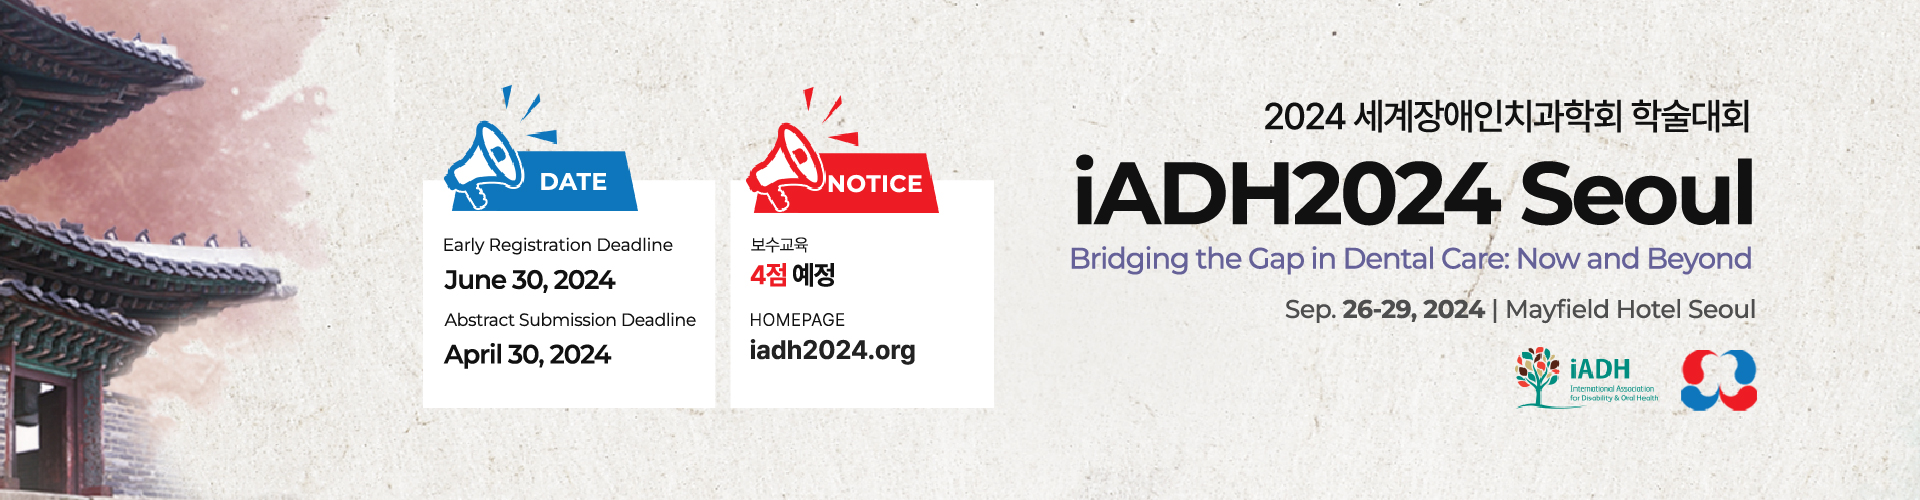 iADH2024 Seoul (2024 세계장애인치과학회 학술대회) 사전등록